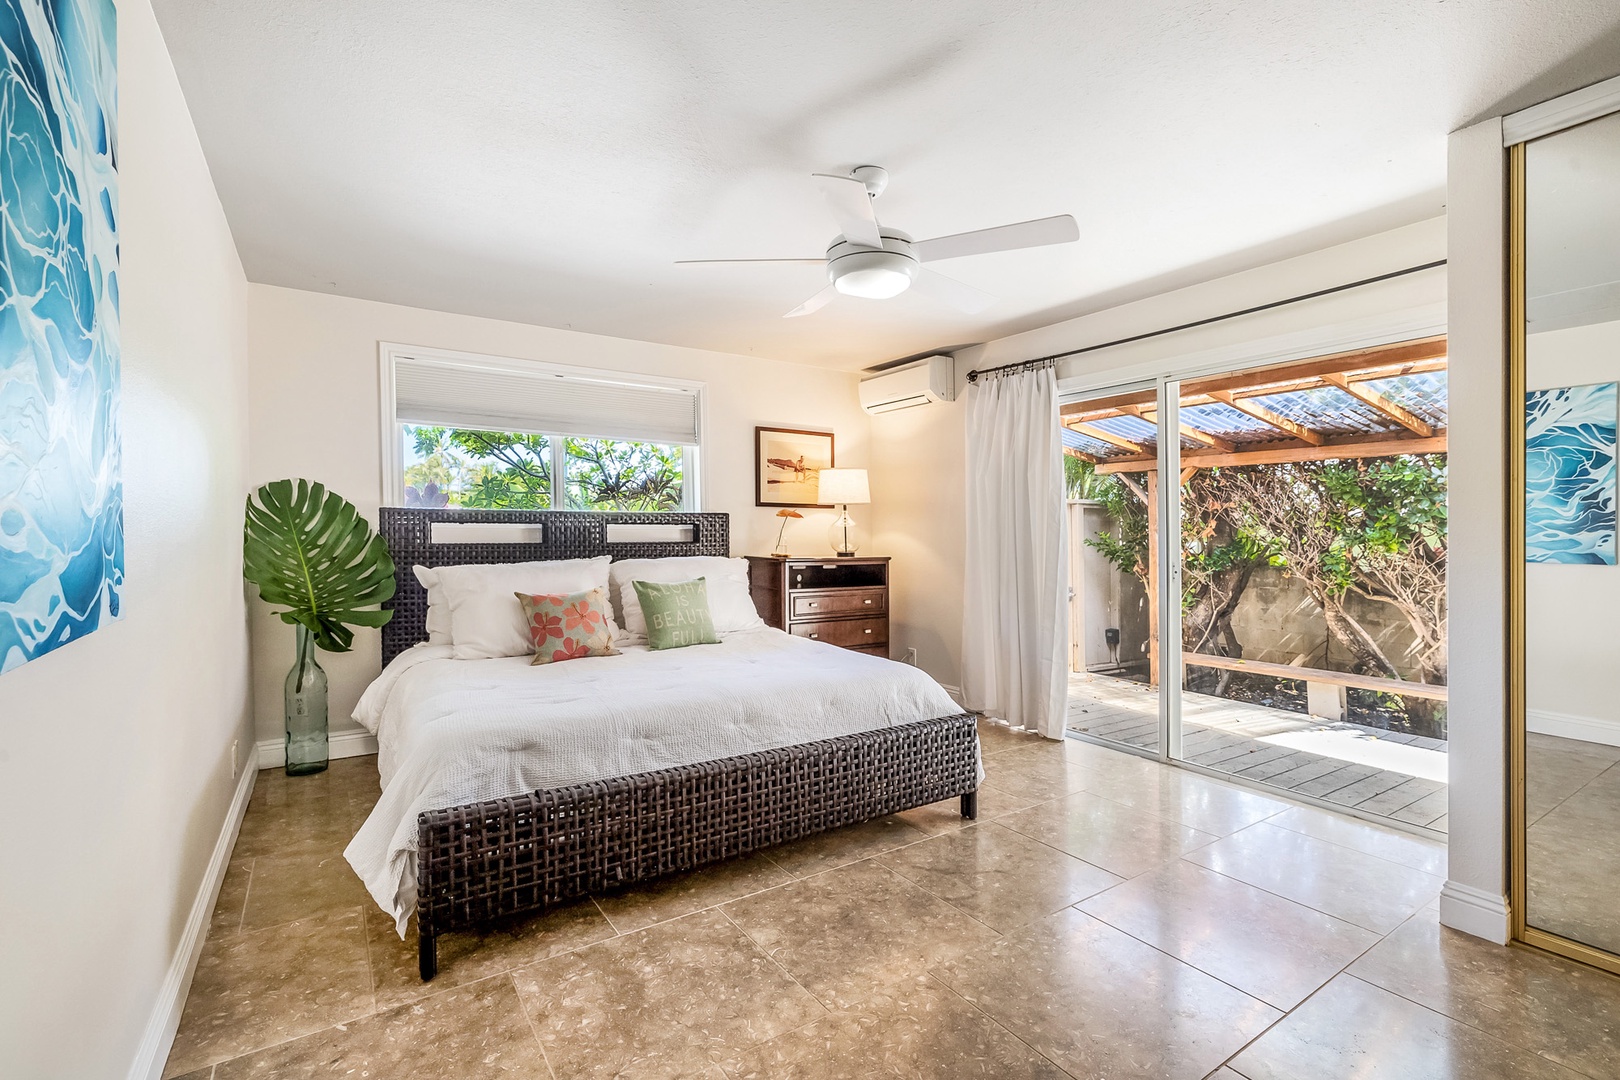 Honolulu Vacation Rentals, Hale Ho'omaha - Guest Bedroom 5 with queen bed